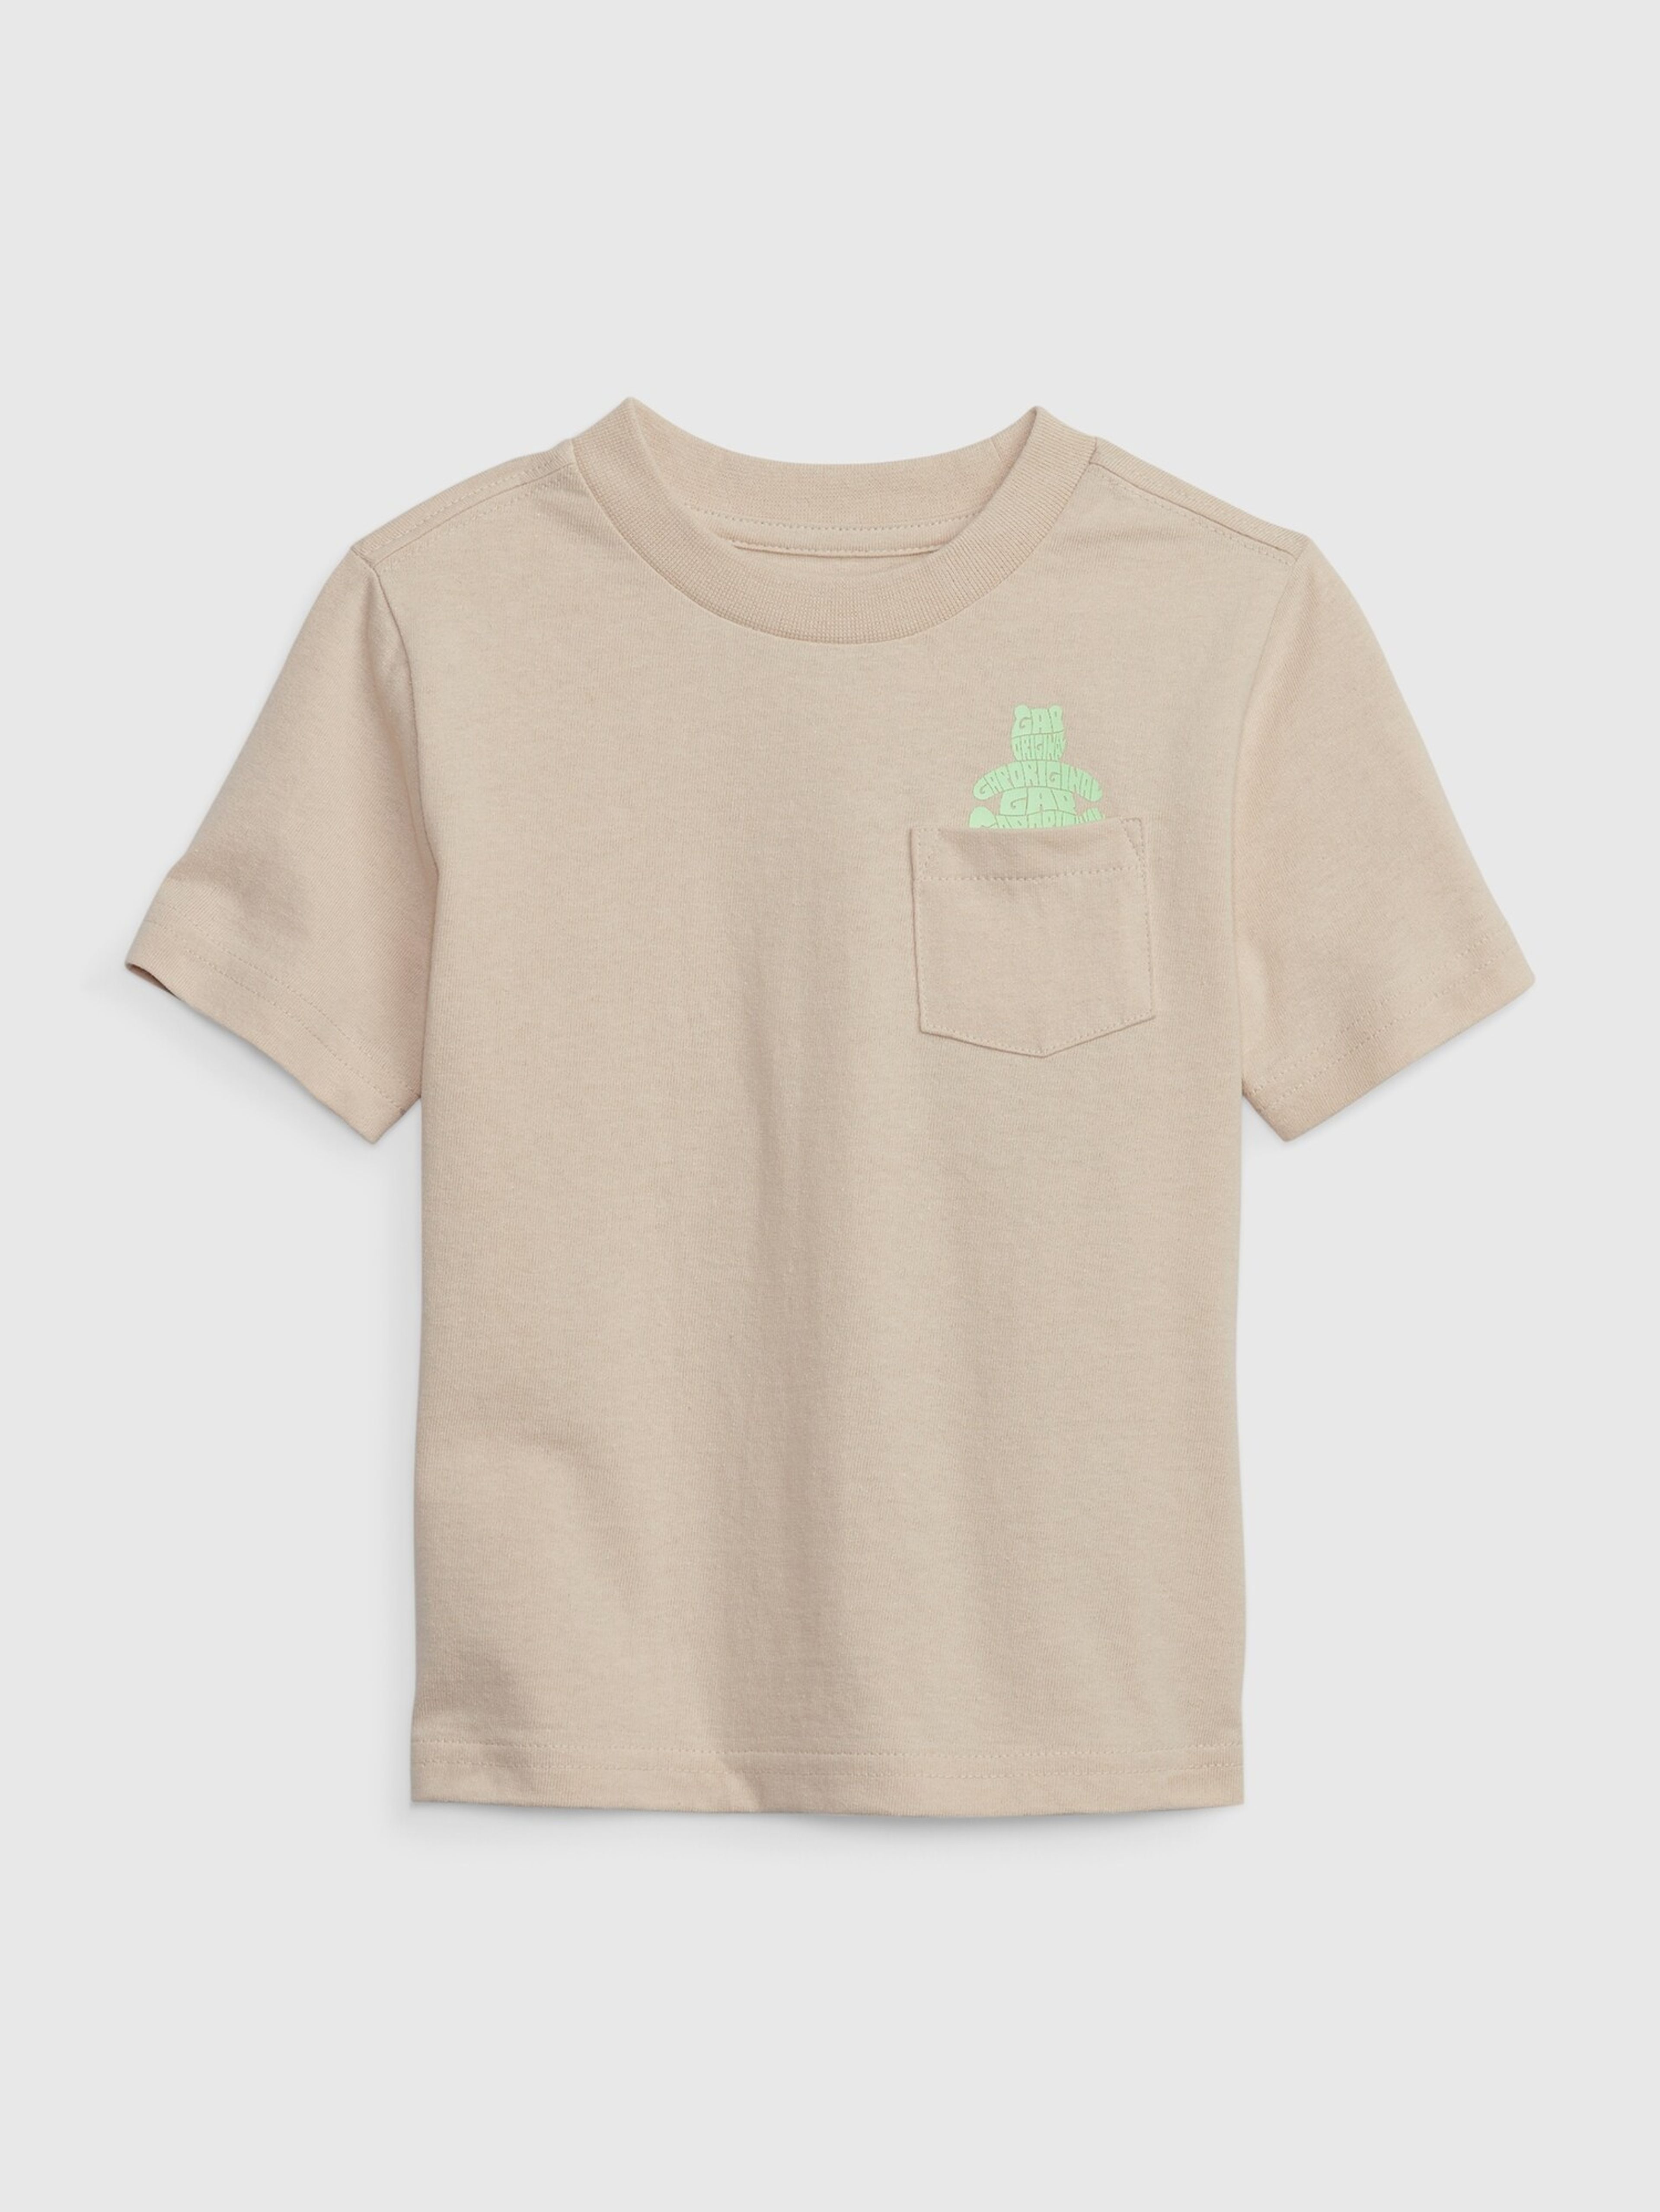 Kinder-T-Shirt mit Brannan Bear